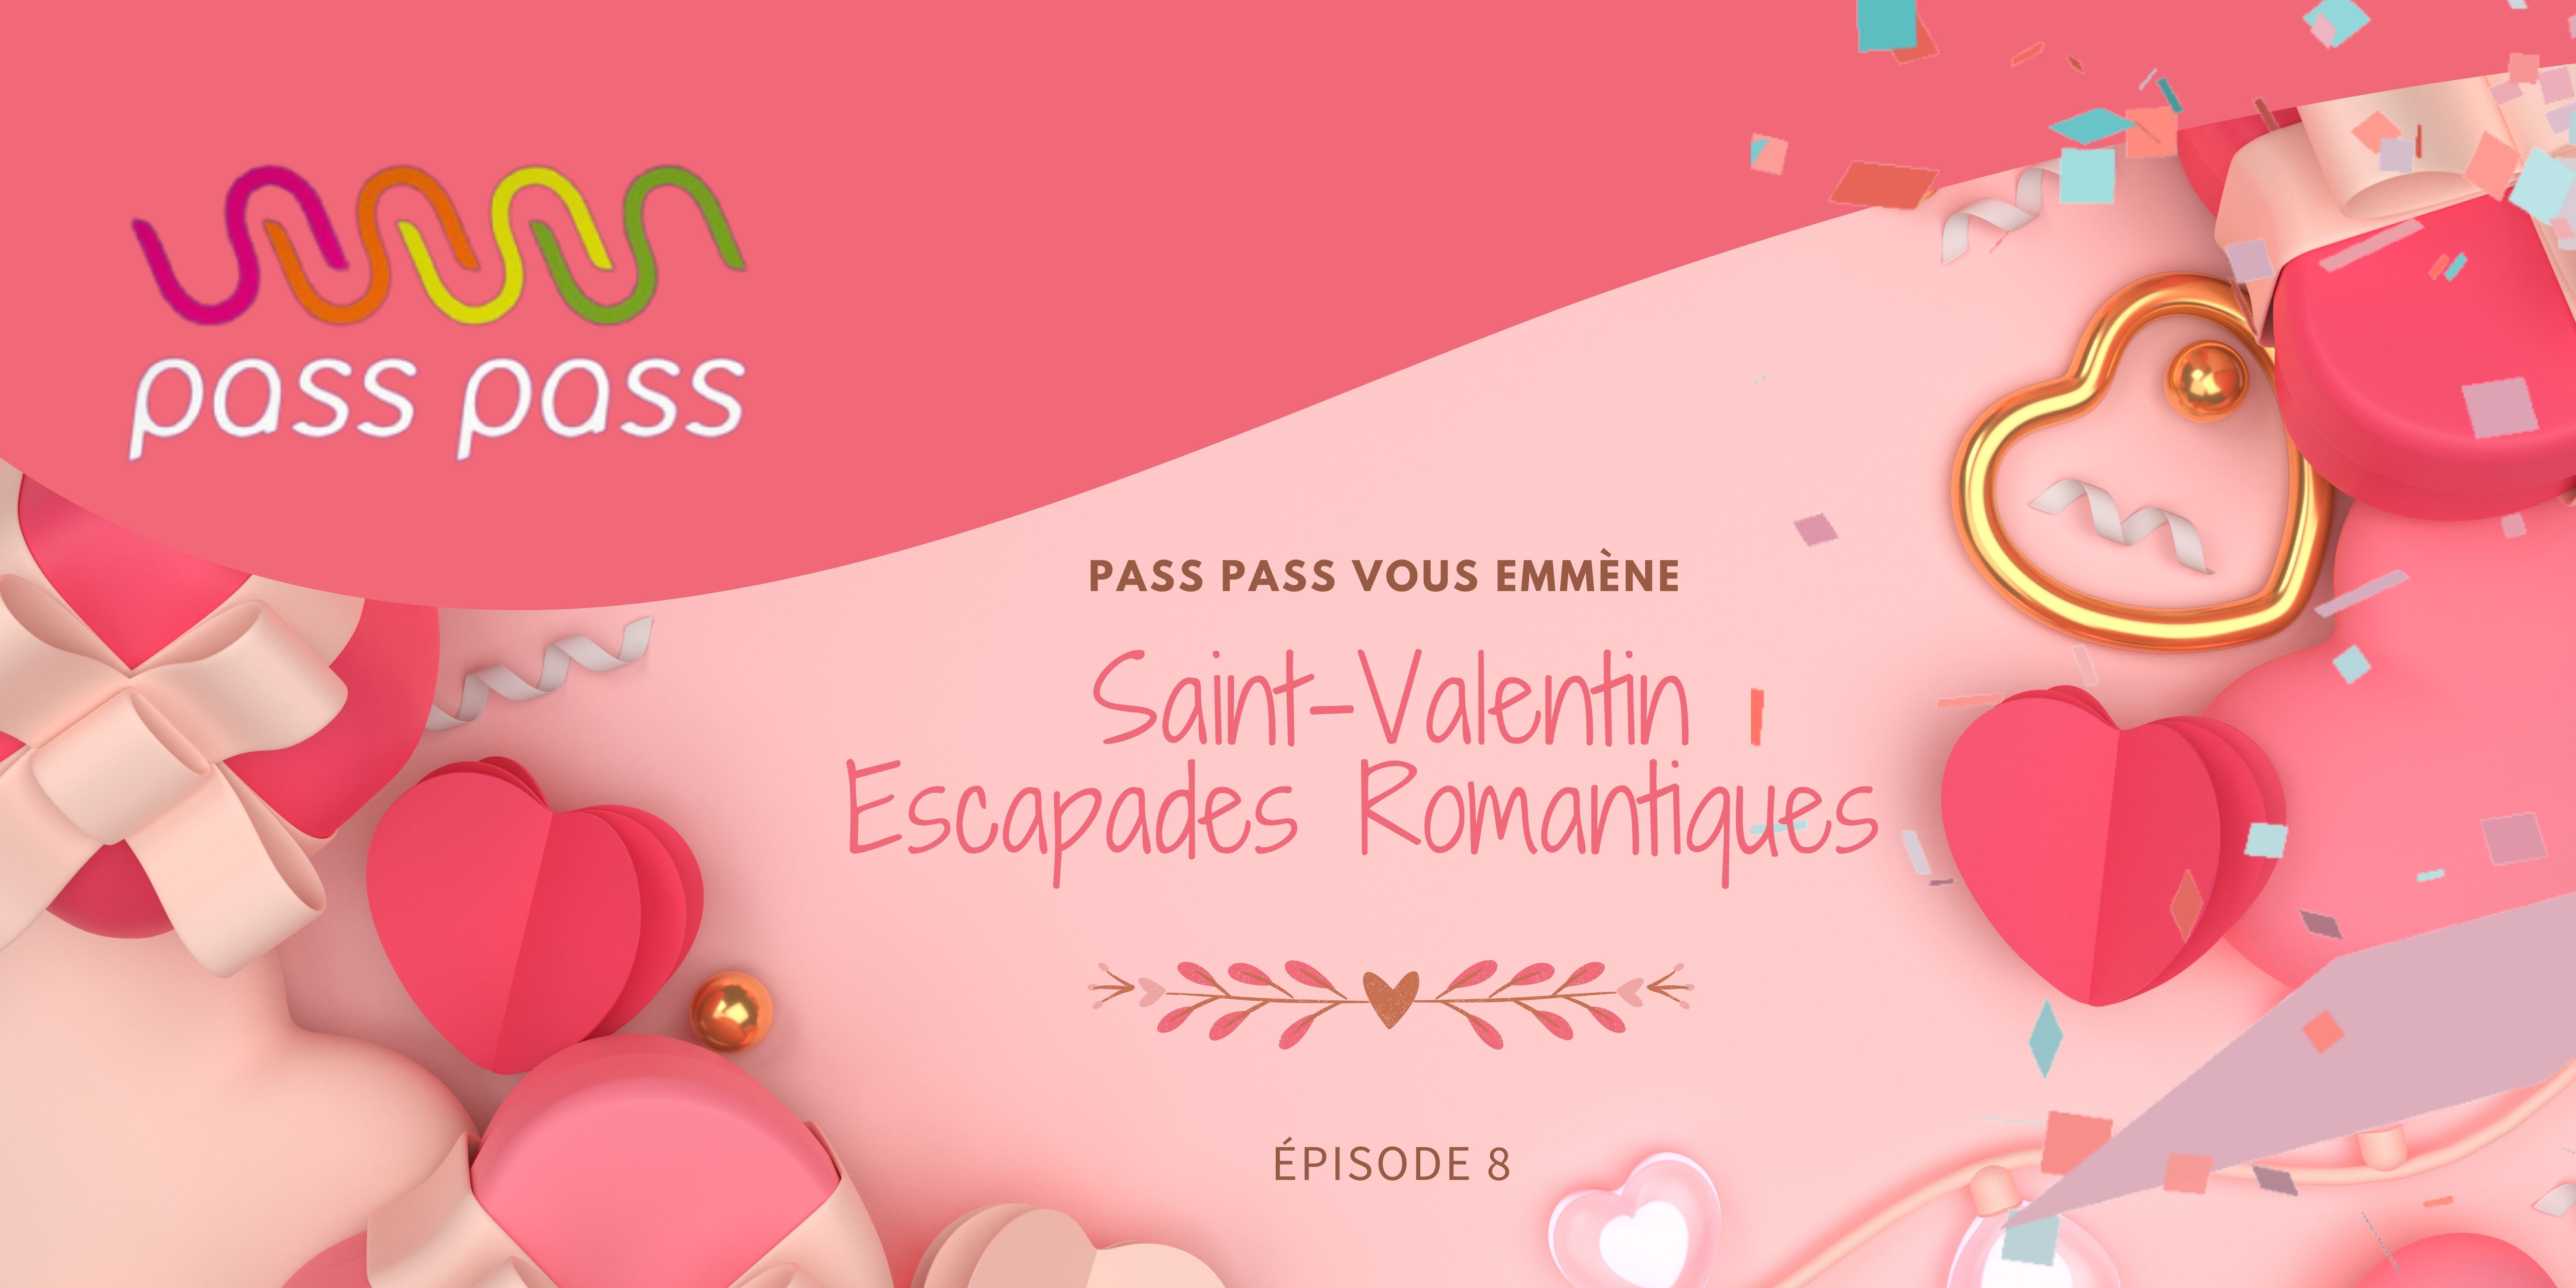 Lire l'article sur Pass Pass vous emmène : Escapades romantiques